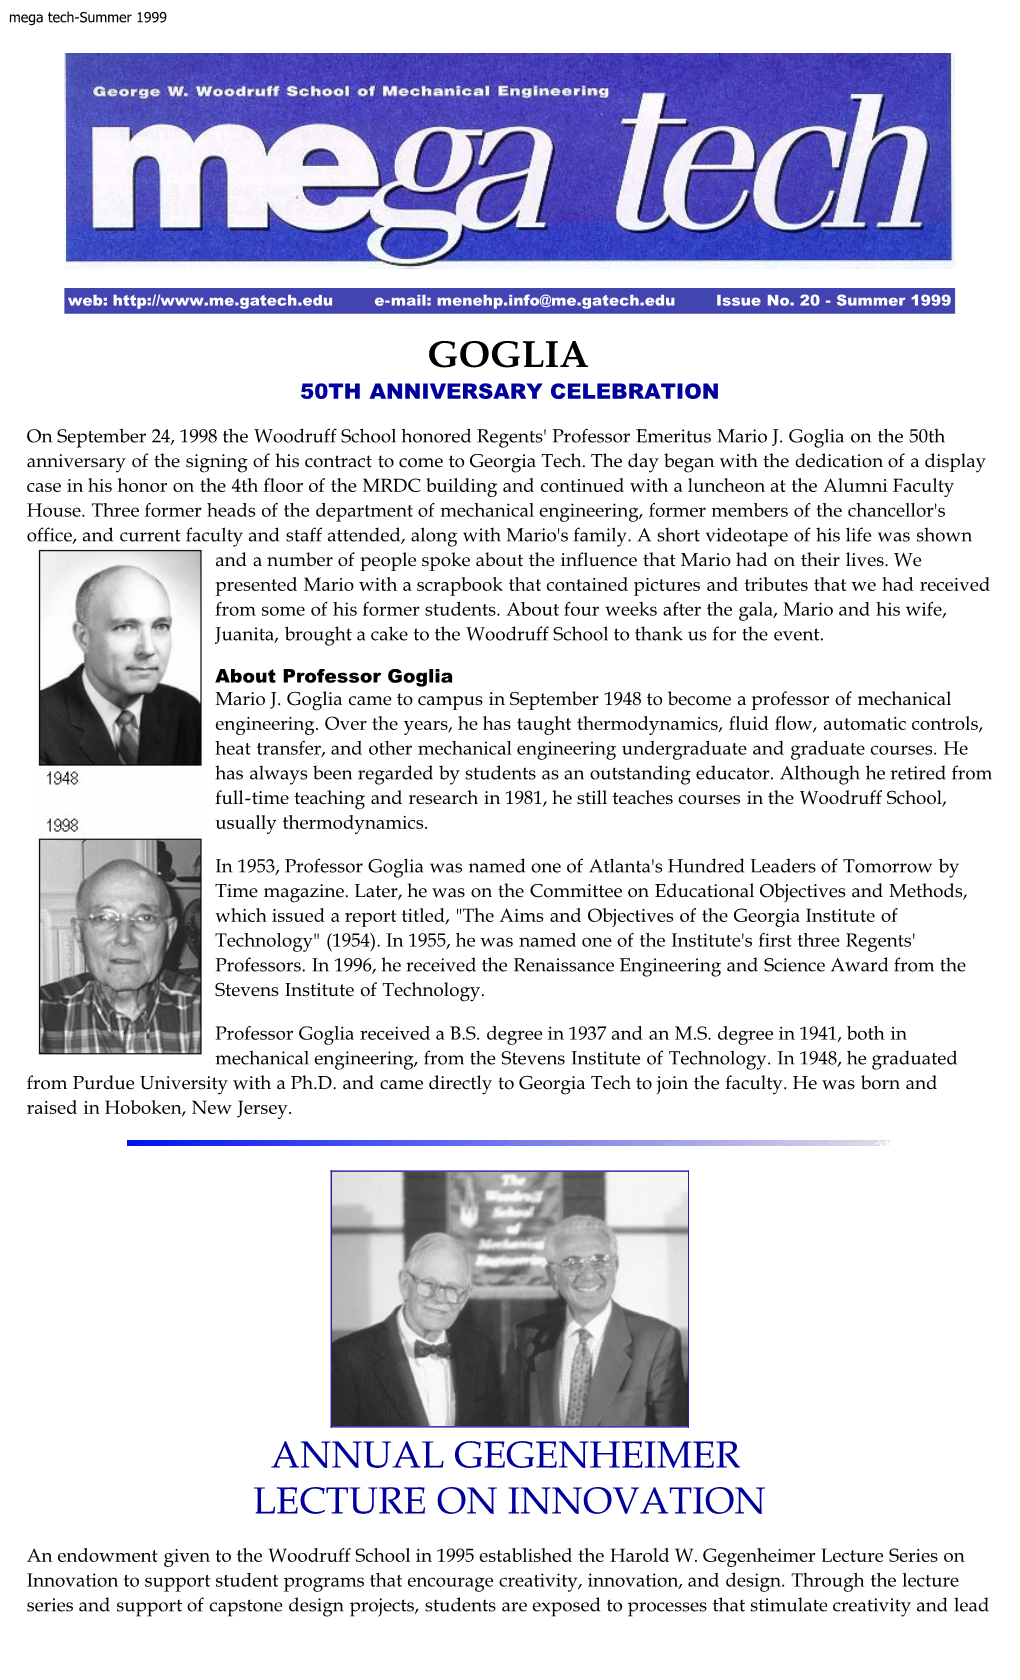 Goglia 50Th Anniversary Celebration